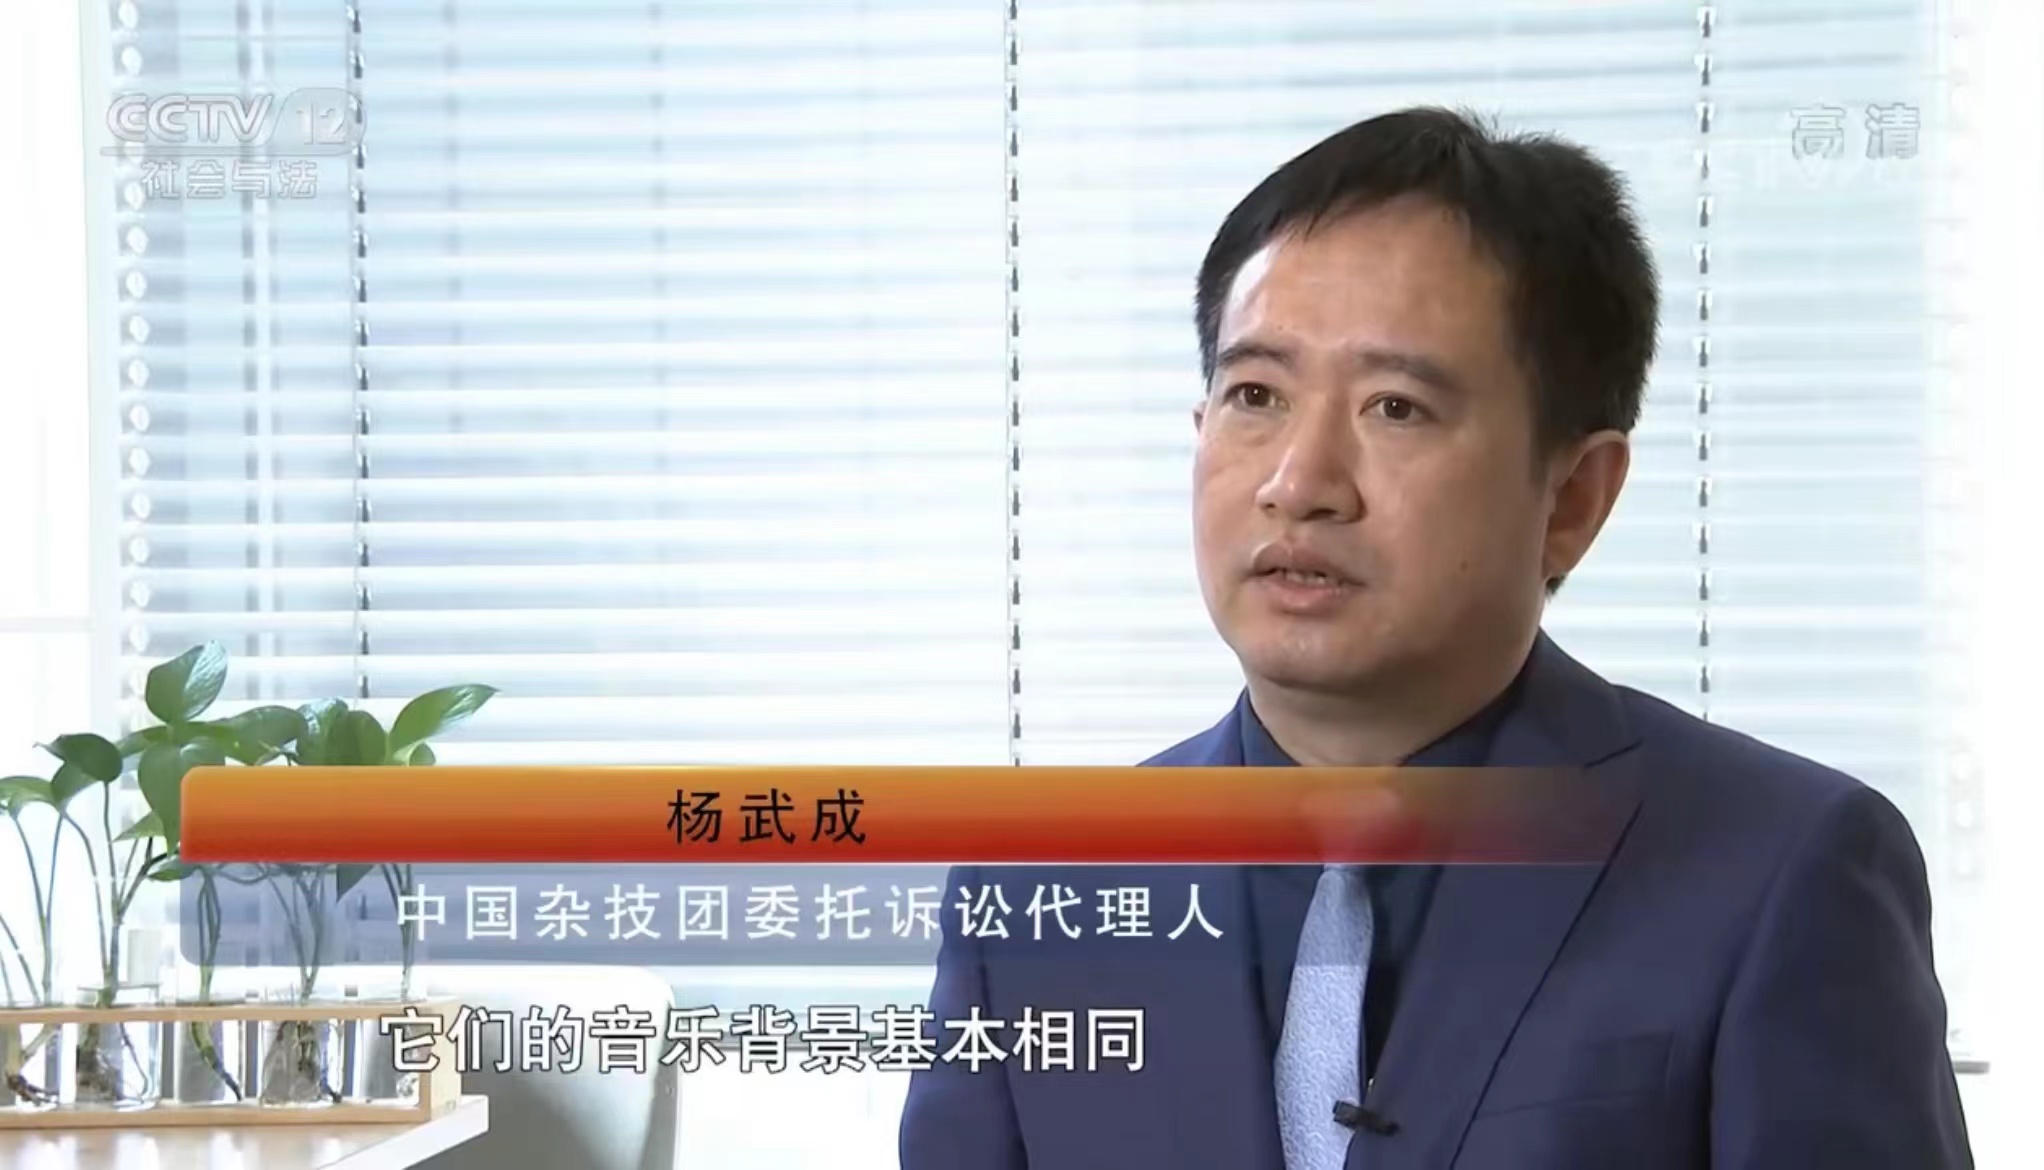 杨律师接受CCTV12采访